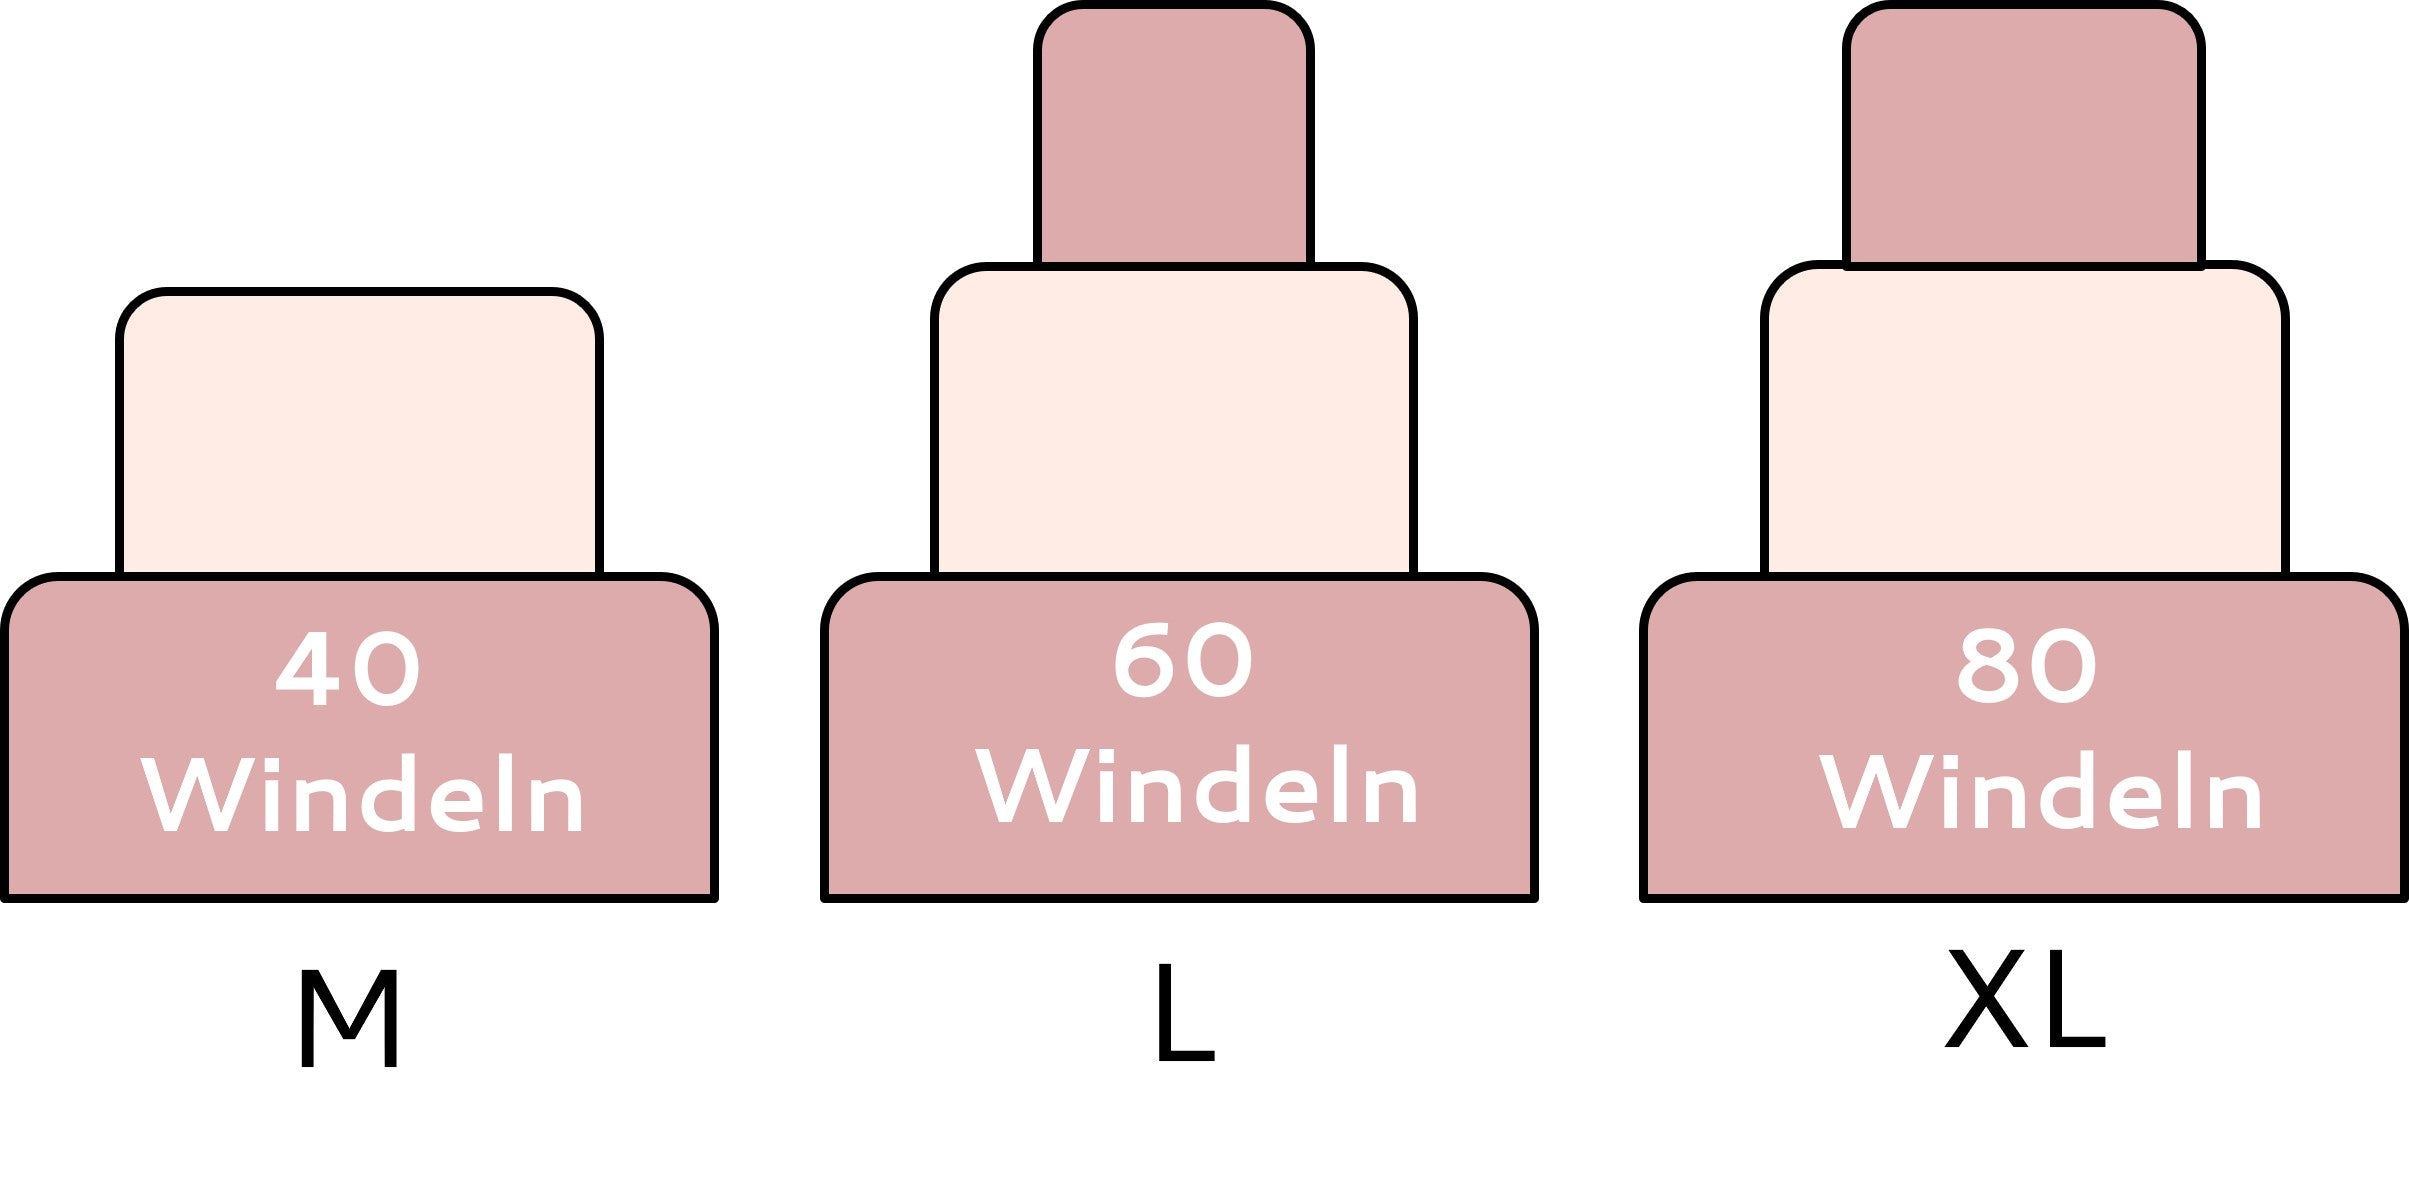 Windeltorten in verschiedenen Größen: M mit 40 Windeln, L mit 60 Windeln und XL mit 80 Windeln